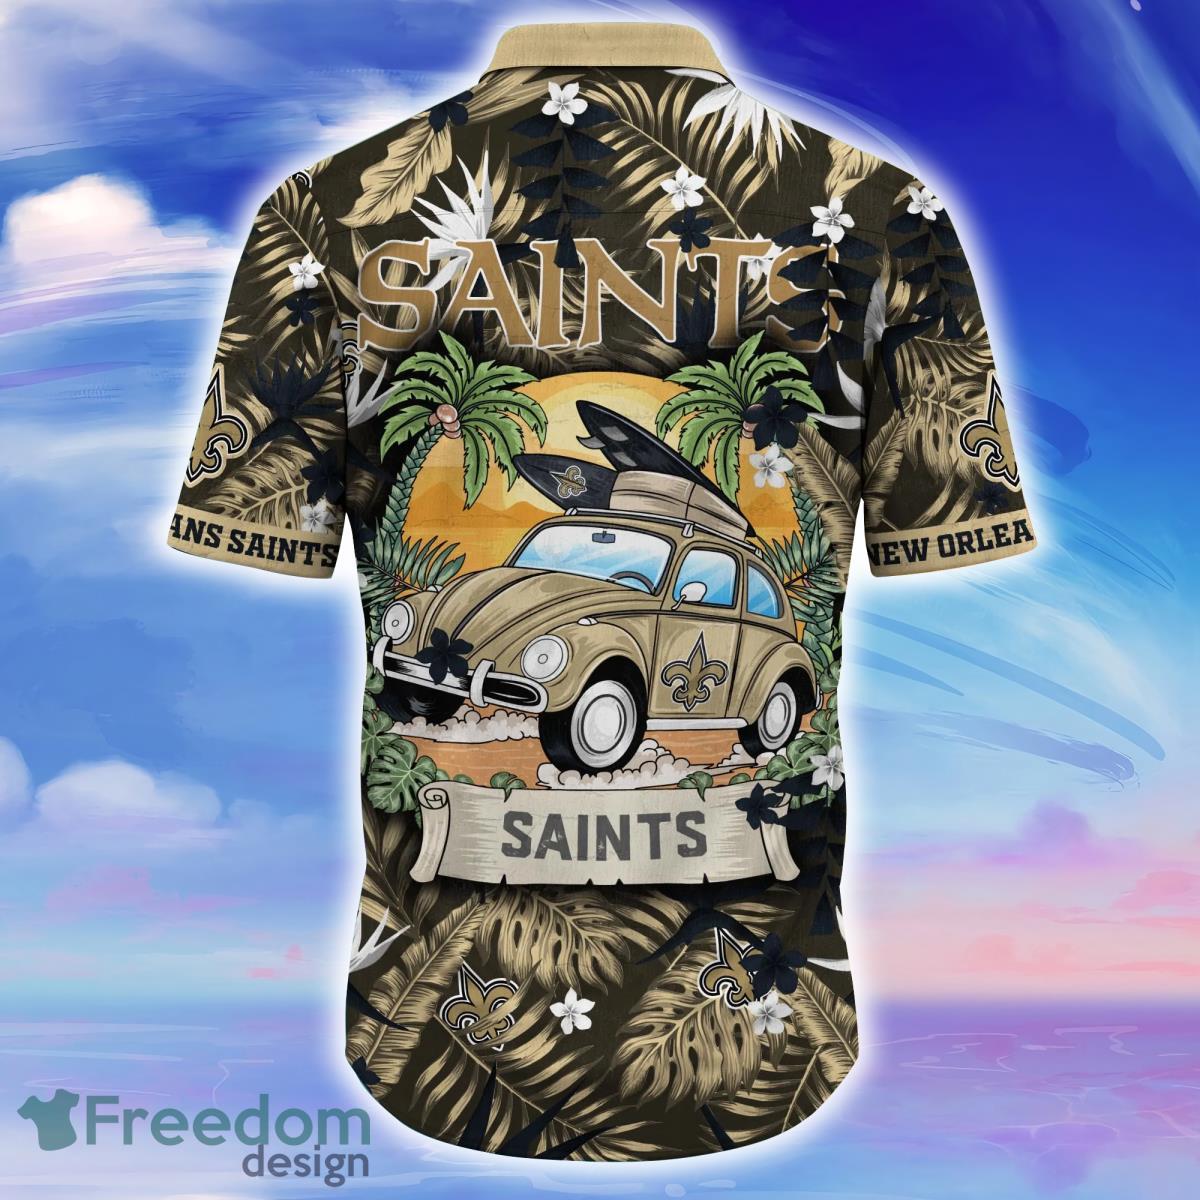 Tampa Bay Lightning NHL Flower Hawaiian Shirt For Men Women Impressive Gift  For Fans - Freedomdesign